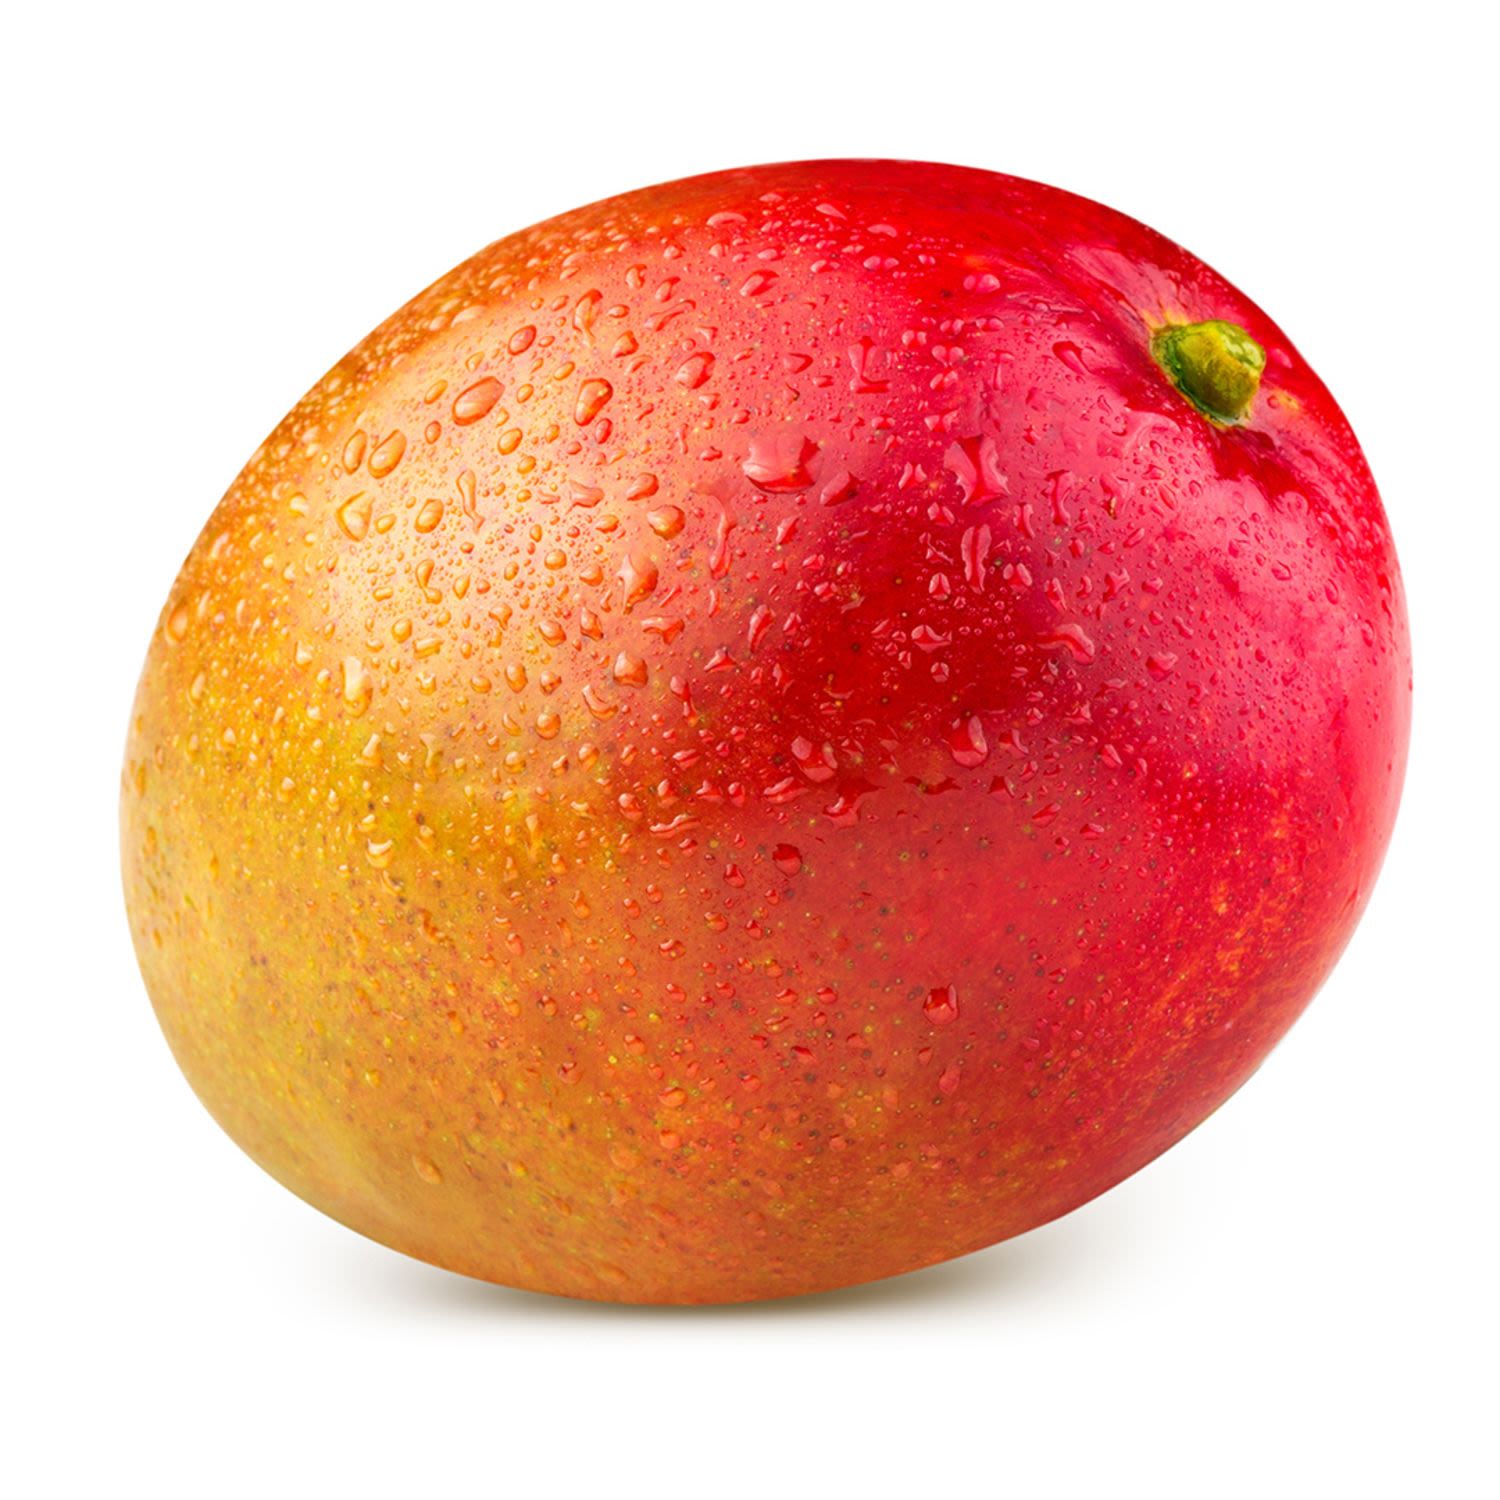 Calypso Mango, 1 Each